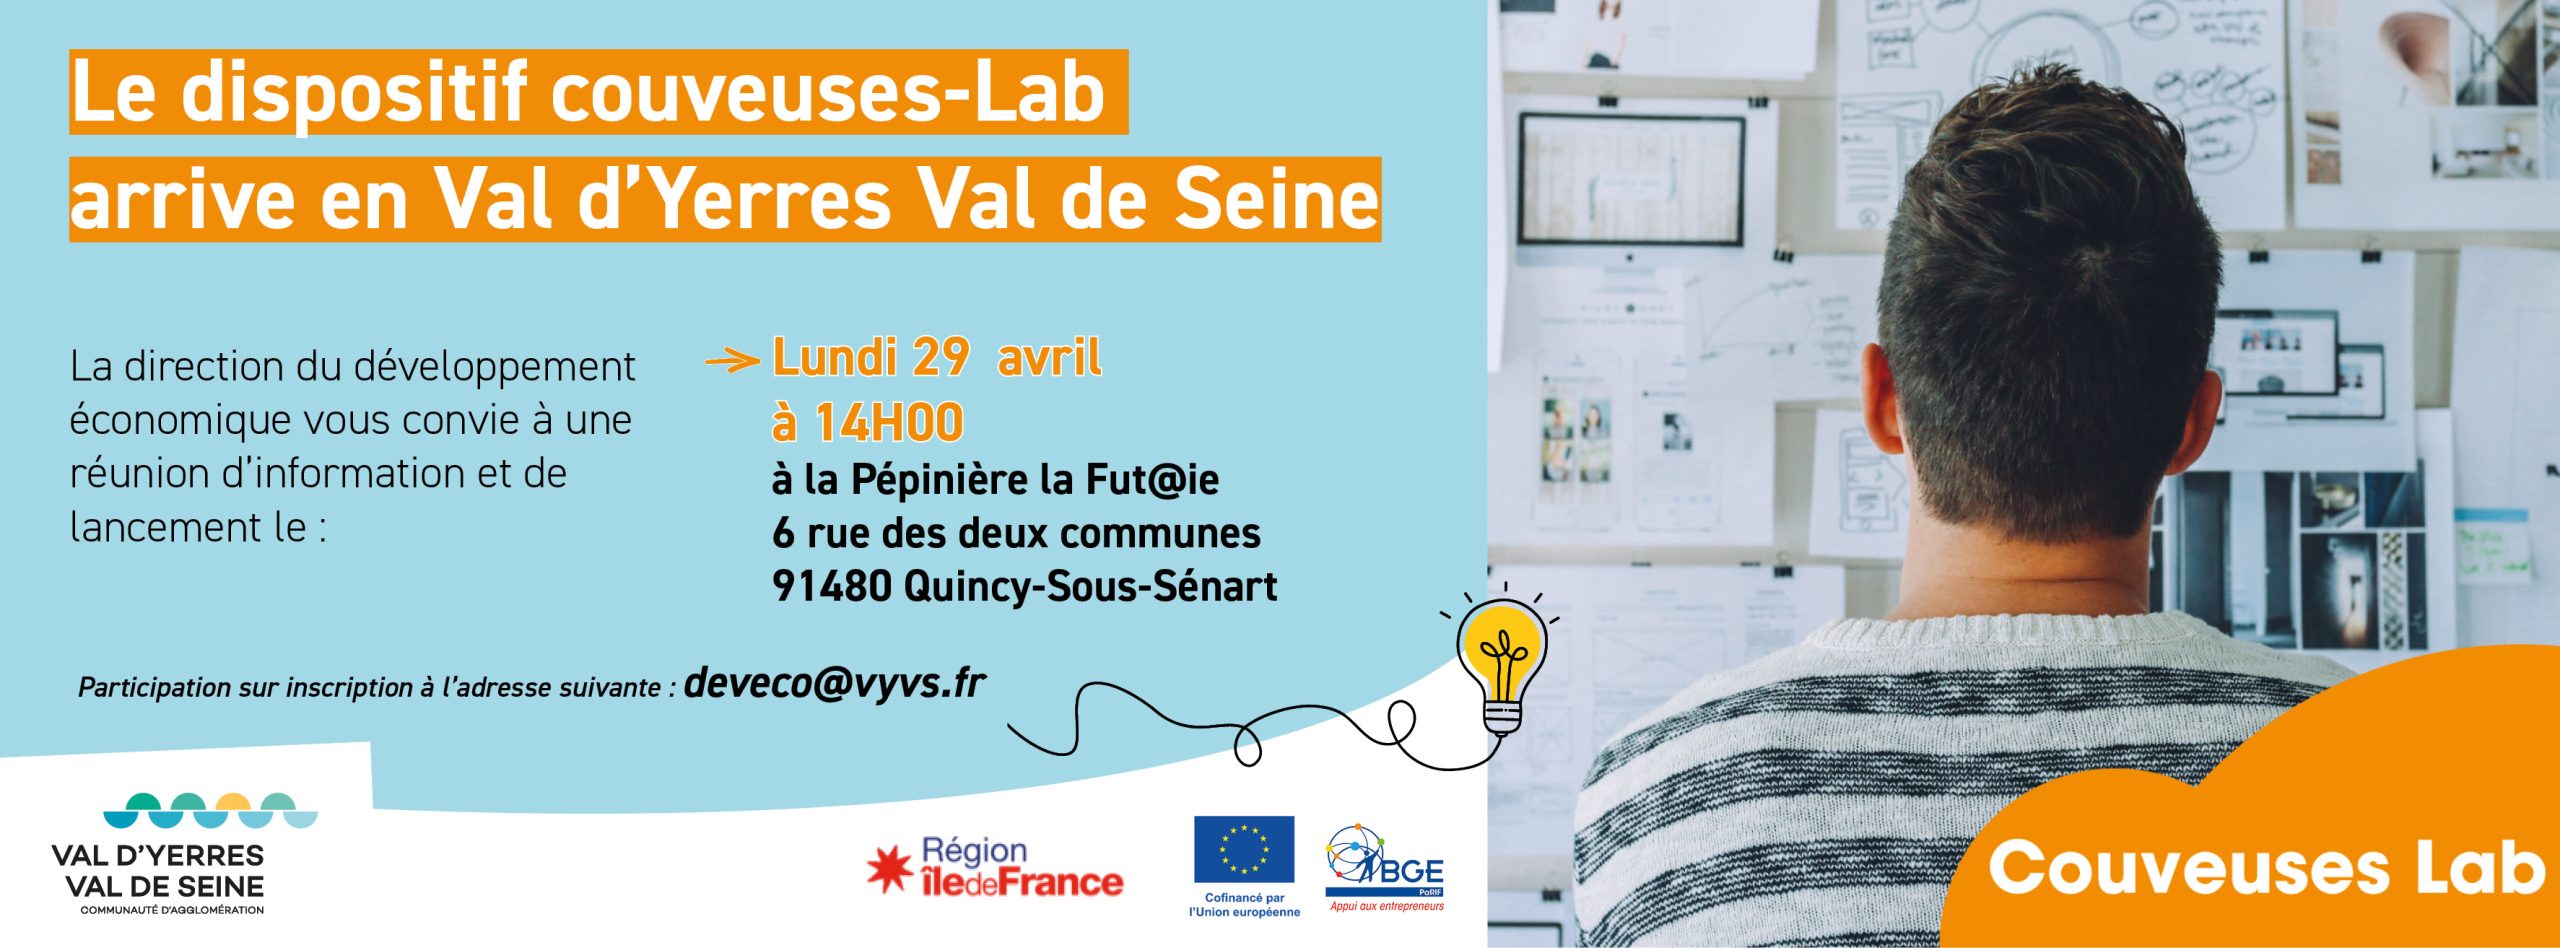 Le dispositif Couveuses-Lab arrive en Val d’Yerres Val de Seine !